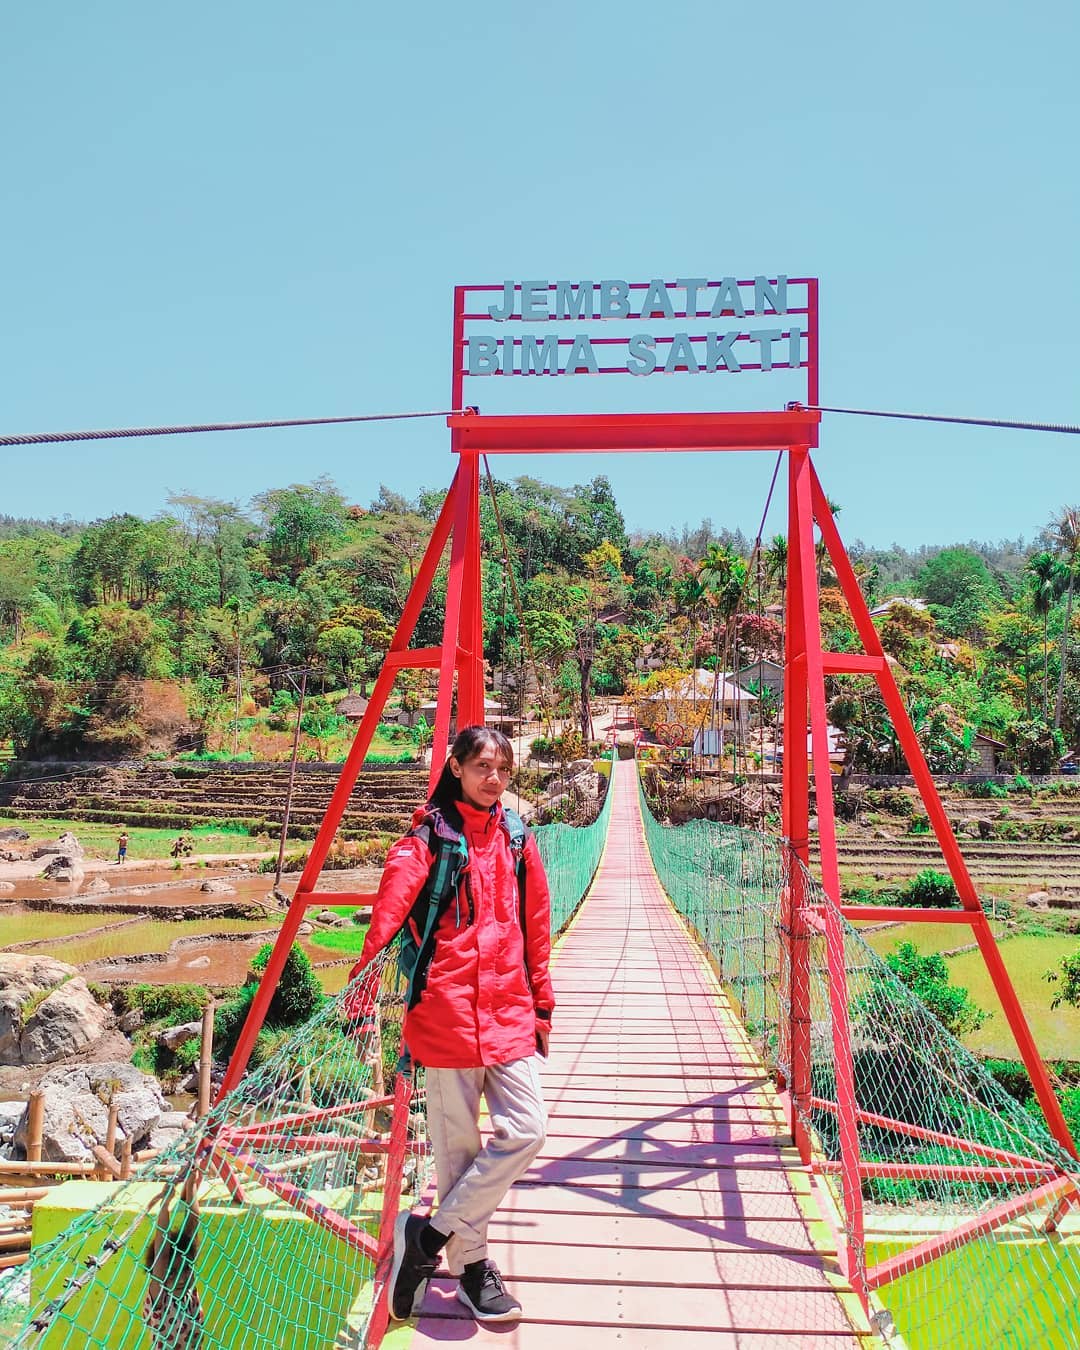 Jembatan yang diberi nama Bima Sakti ini menghubungkan Desa Noepesu, di Kabupaten Timor Tengah Utara dan Desa Bonleu di Timor Tengah Selatan, Nusa Tenggara Timur.